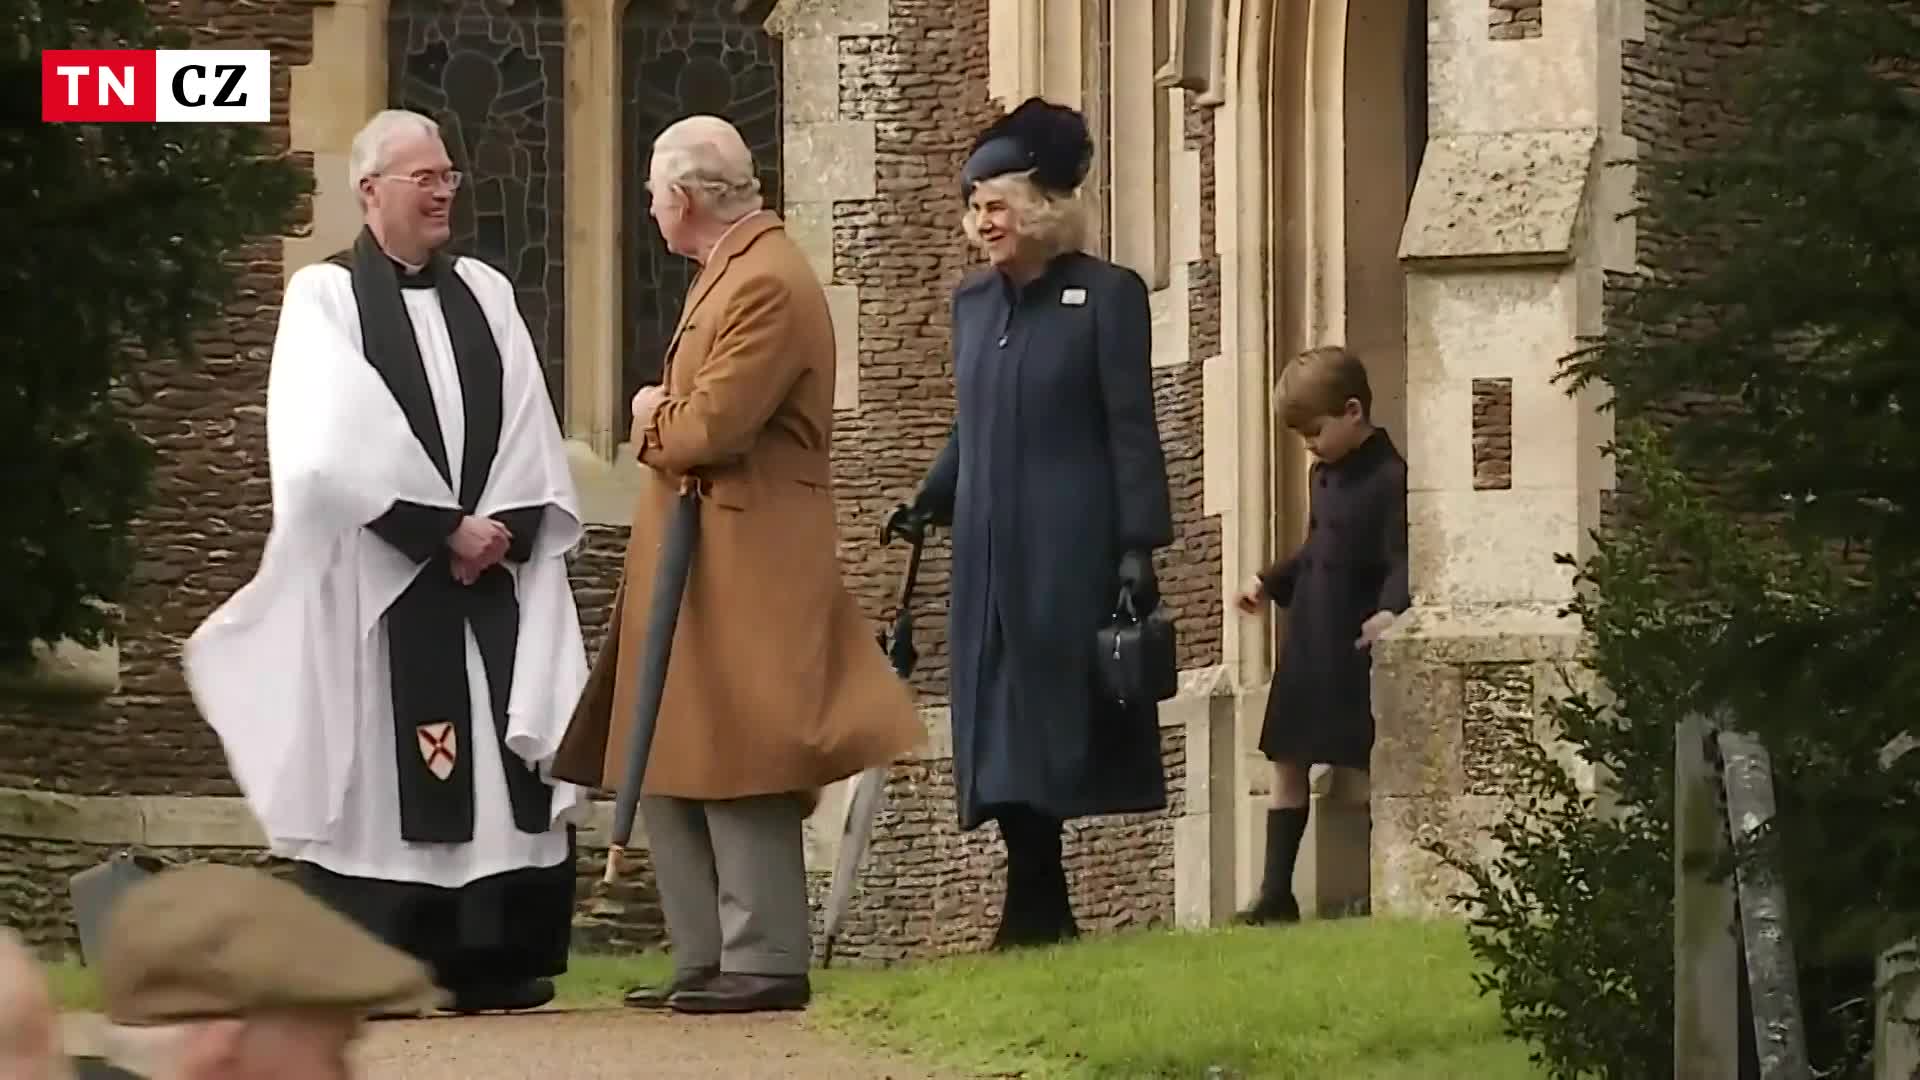 Král Karel III. s rodinou vychází po vánoční bohoslužbě v Sandringhamu